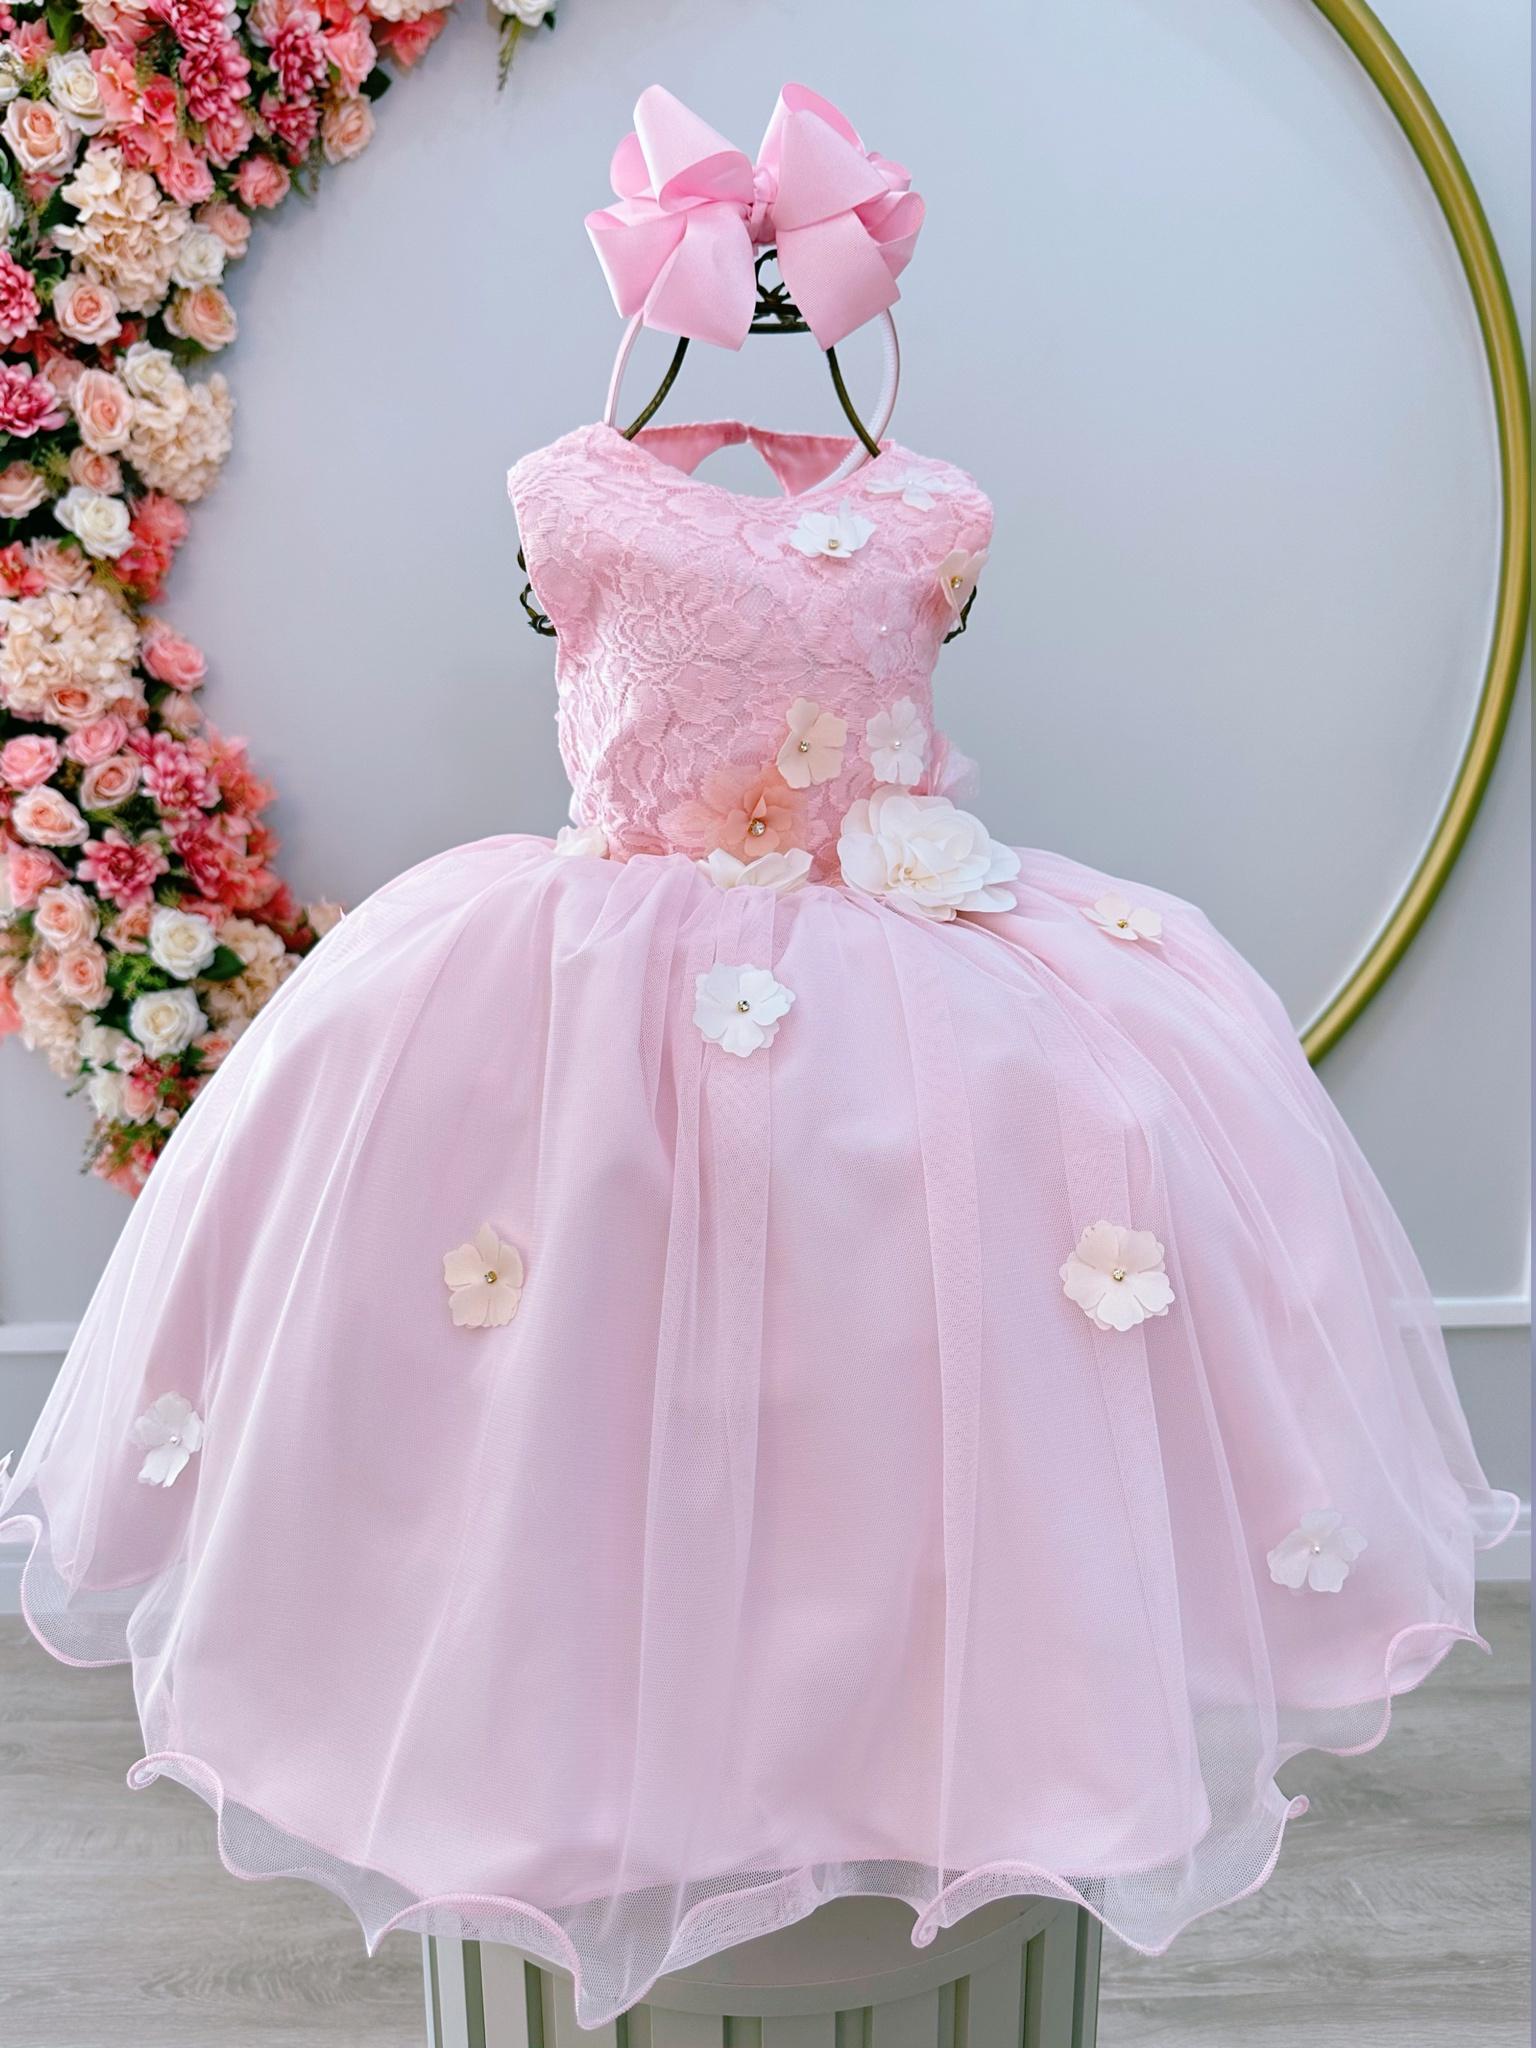 Vestido Infantil Rosa Luxo C/ Flores em Aplique e Renda